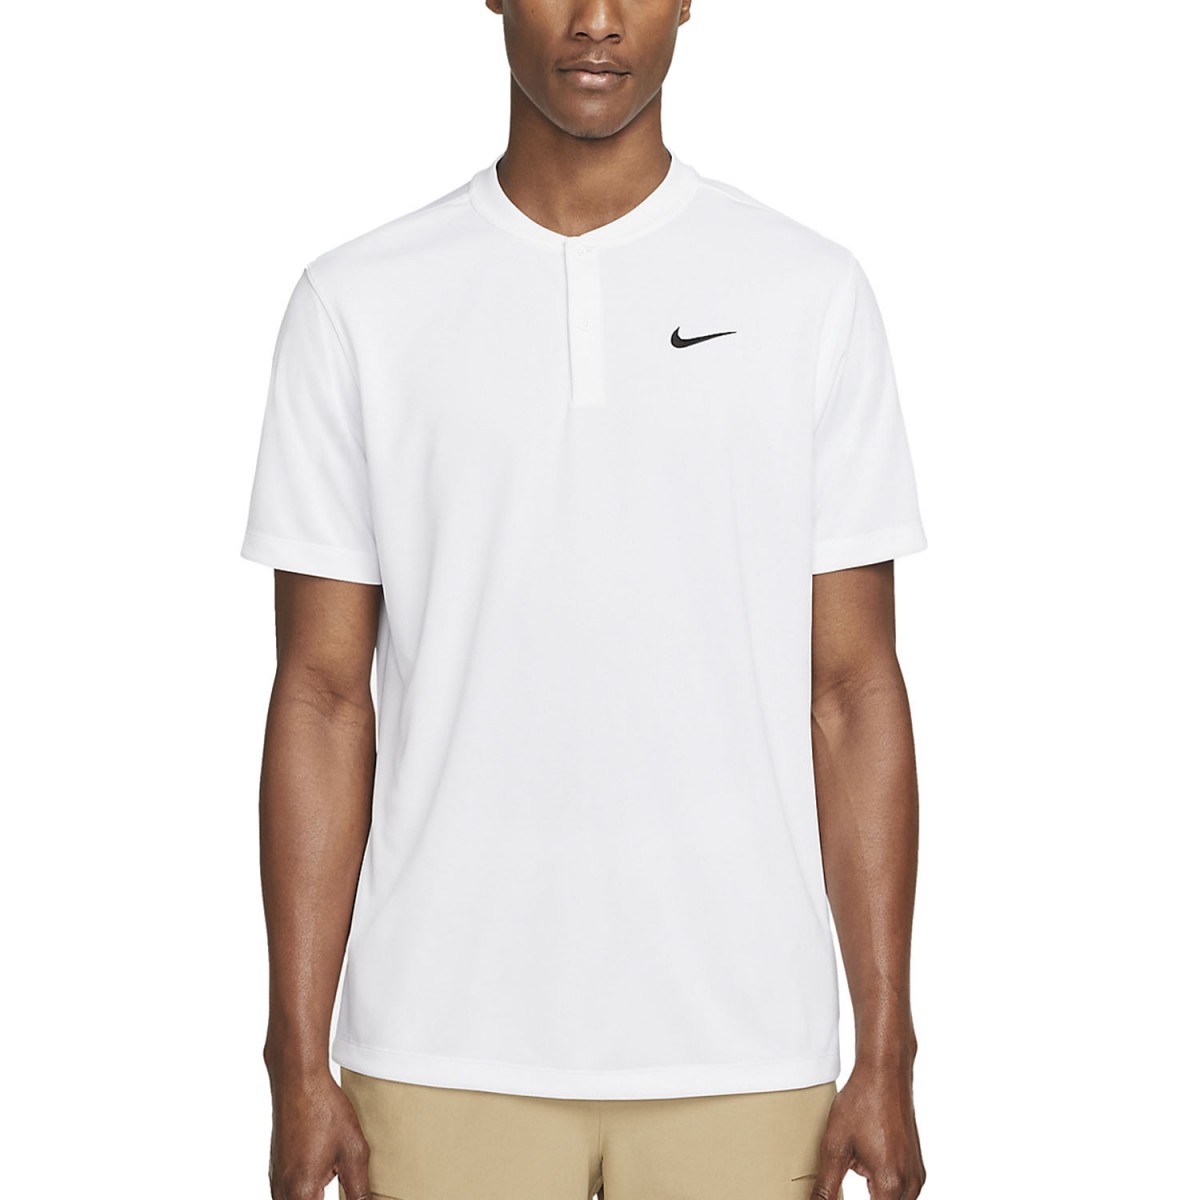 Теннисная футболка мужская Nike Blade Solid Polo white/black